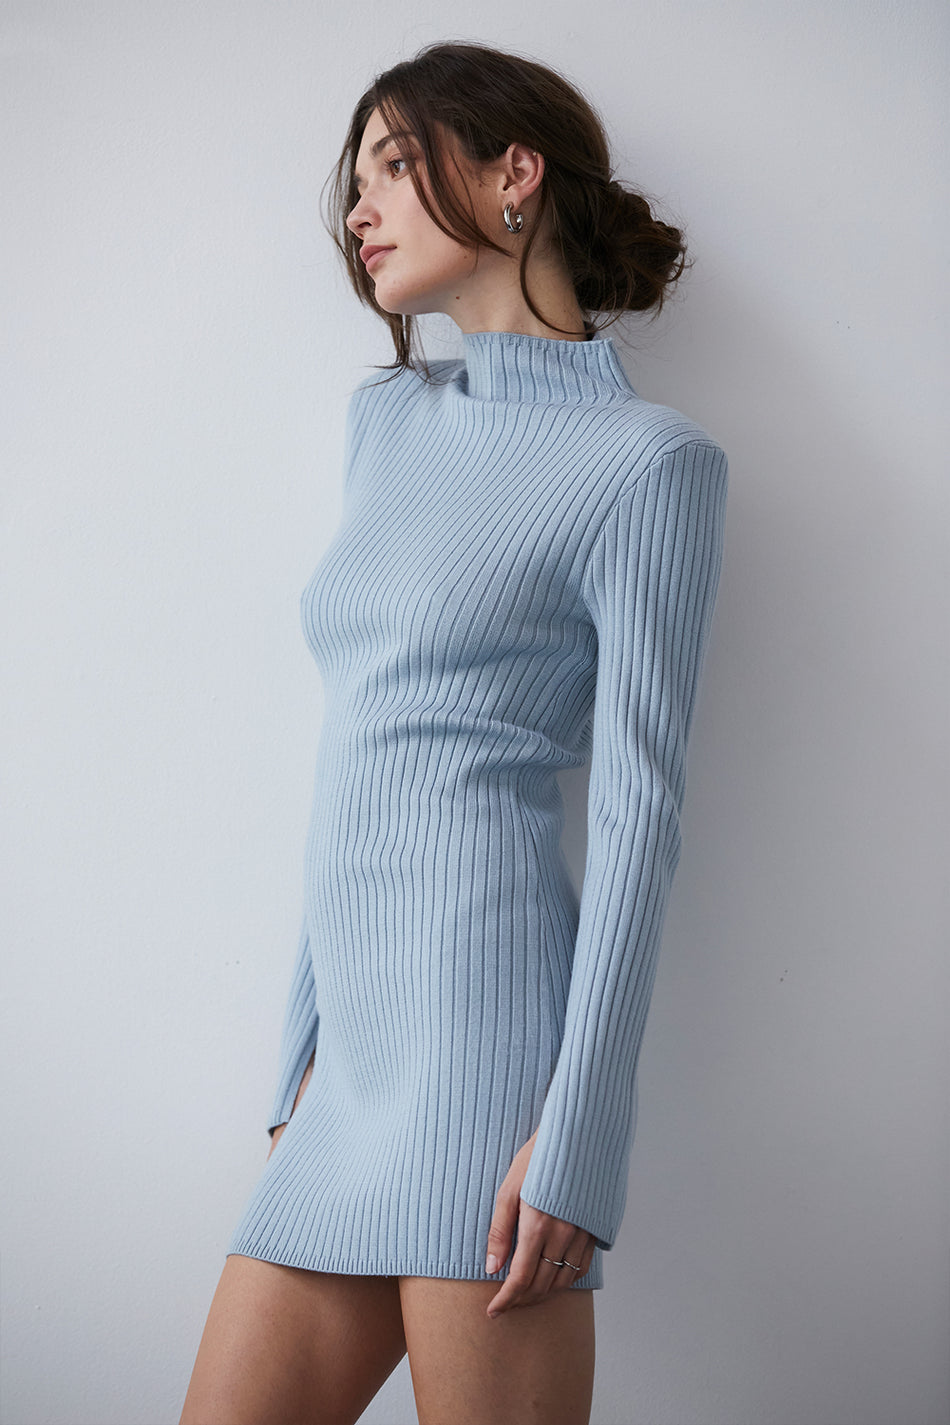 model wearing a blue sweater dress